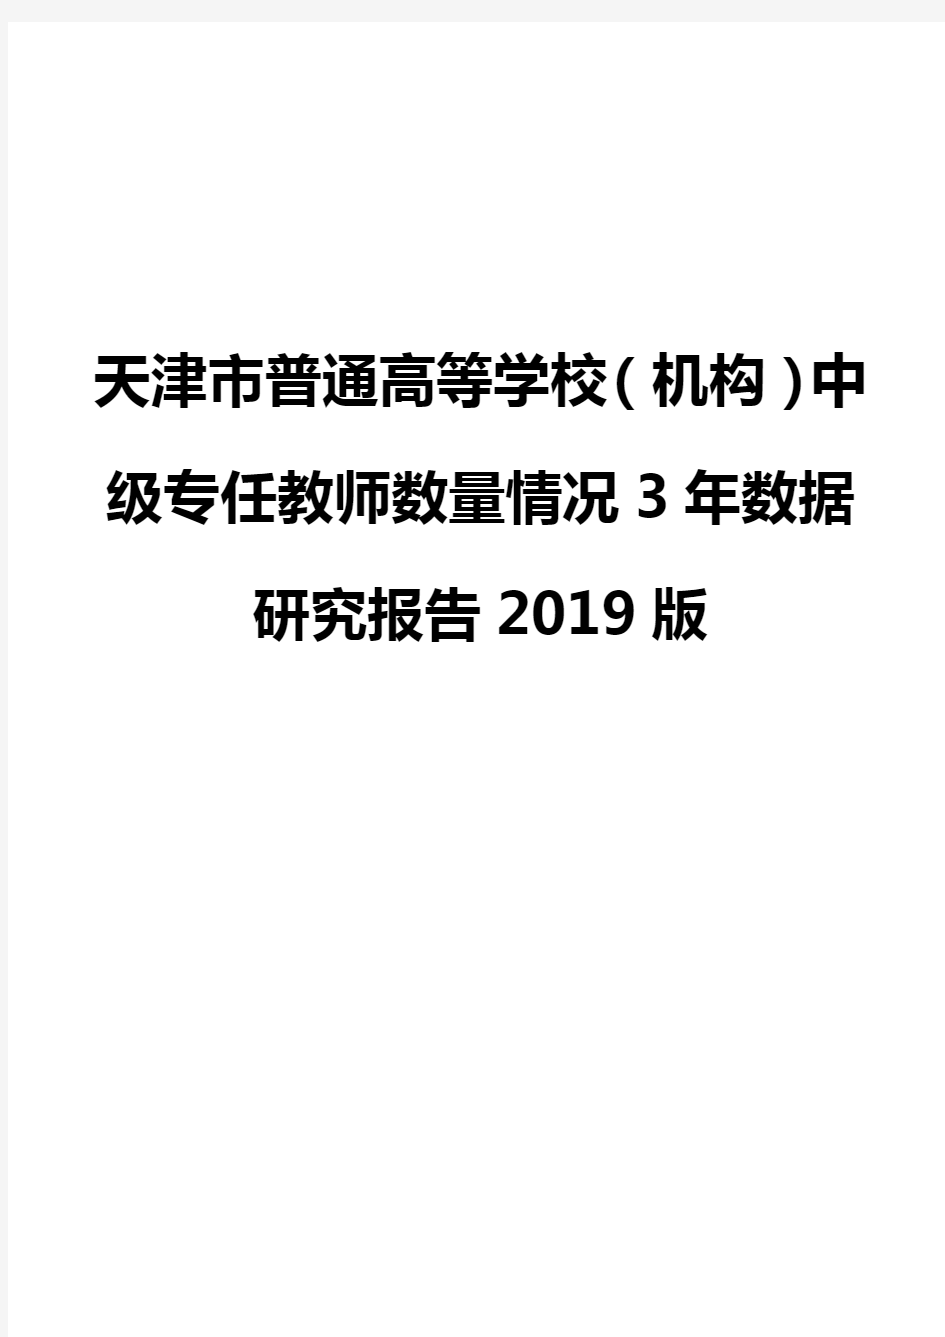 天津市普通高等学校(机构)中级专任教师数量情况3年数据研究报告2019版